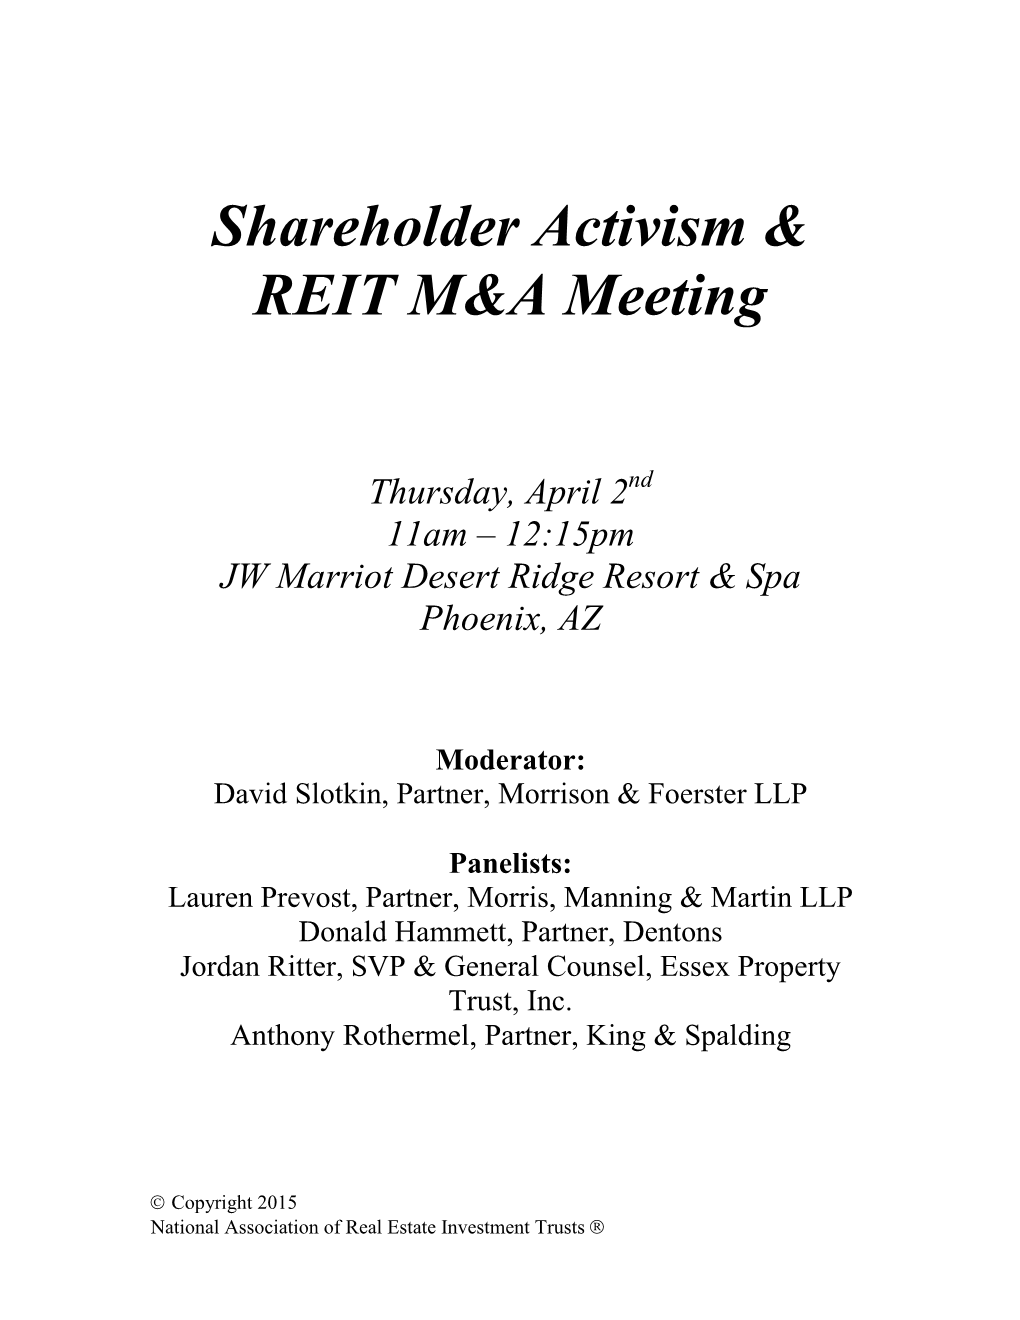 Shareholder Activism & REIT M&A Meeting